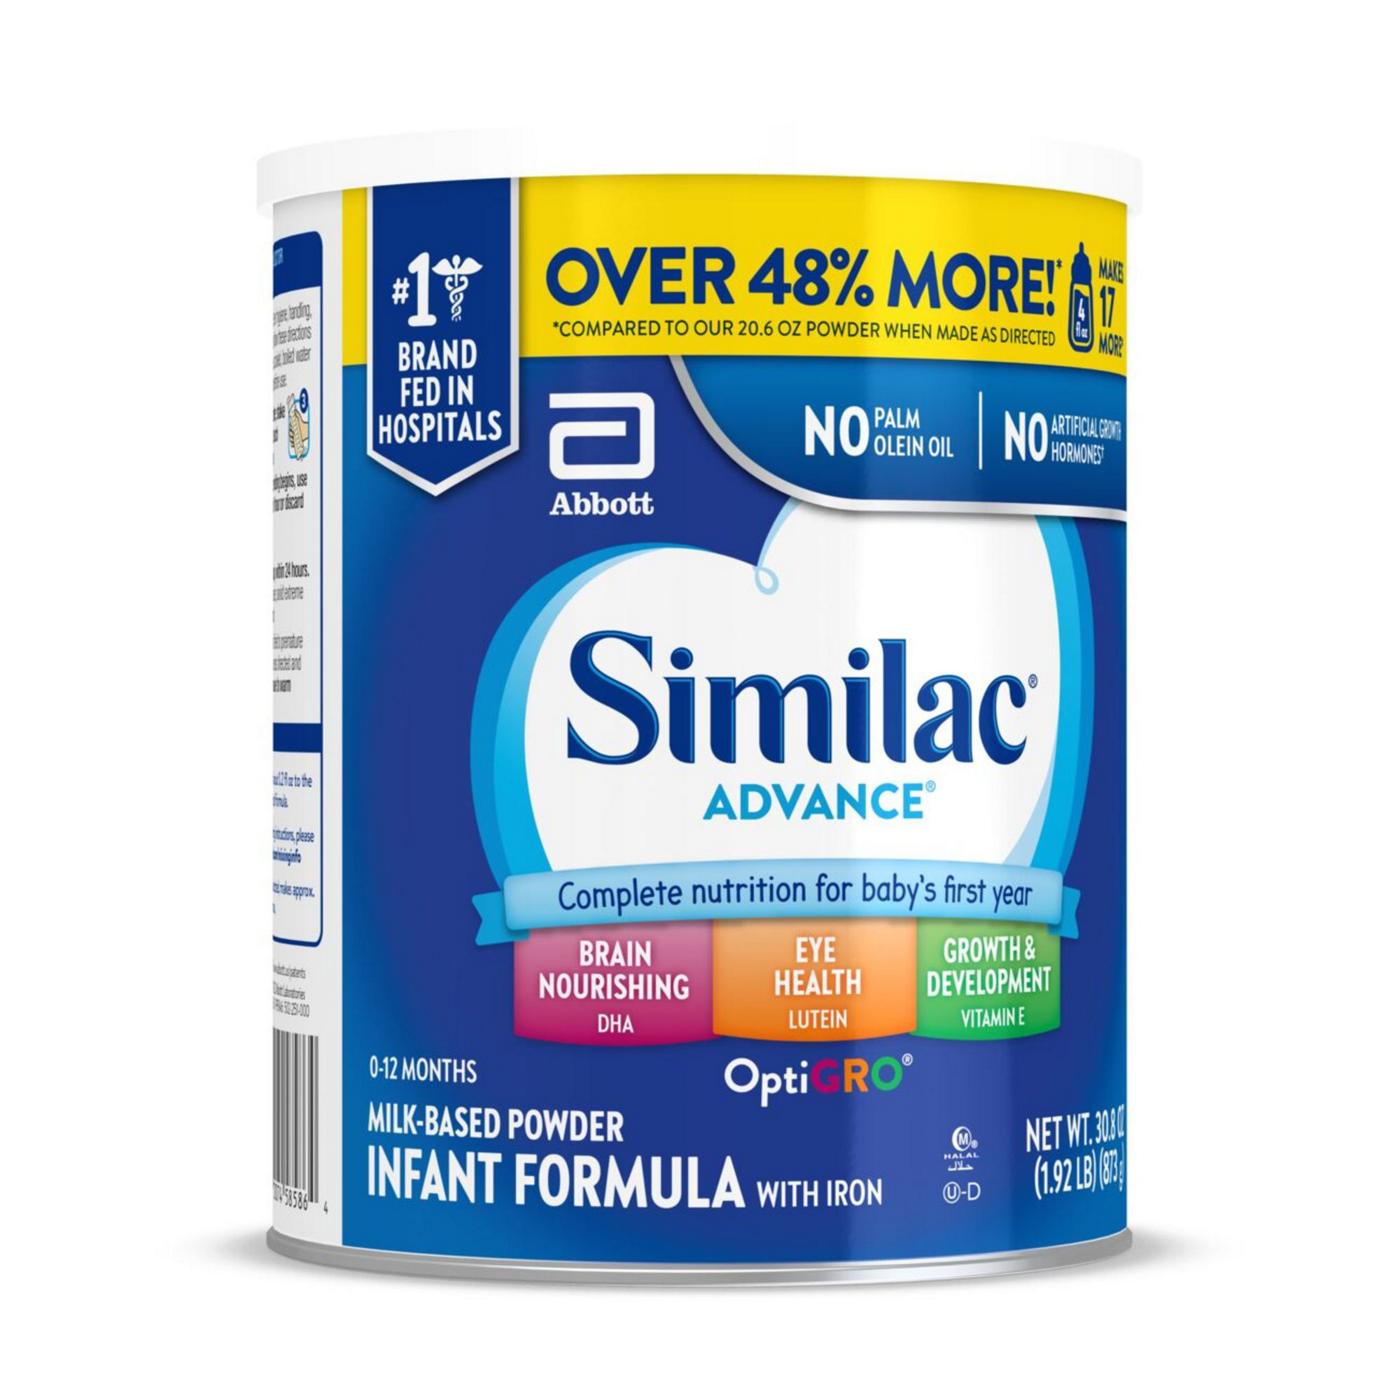 Similac Advance Milk-Based Powder Infant Formula with Iron; image 8 of 10